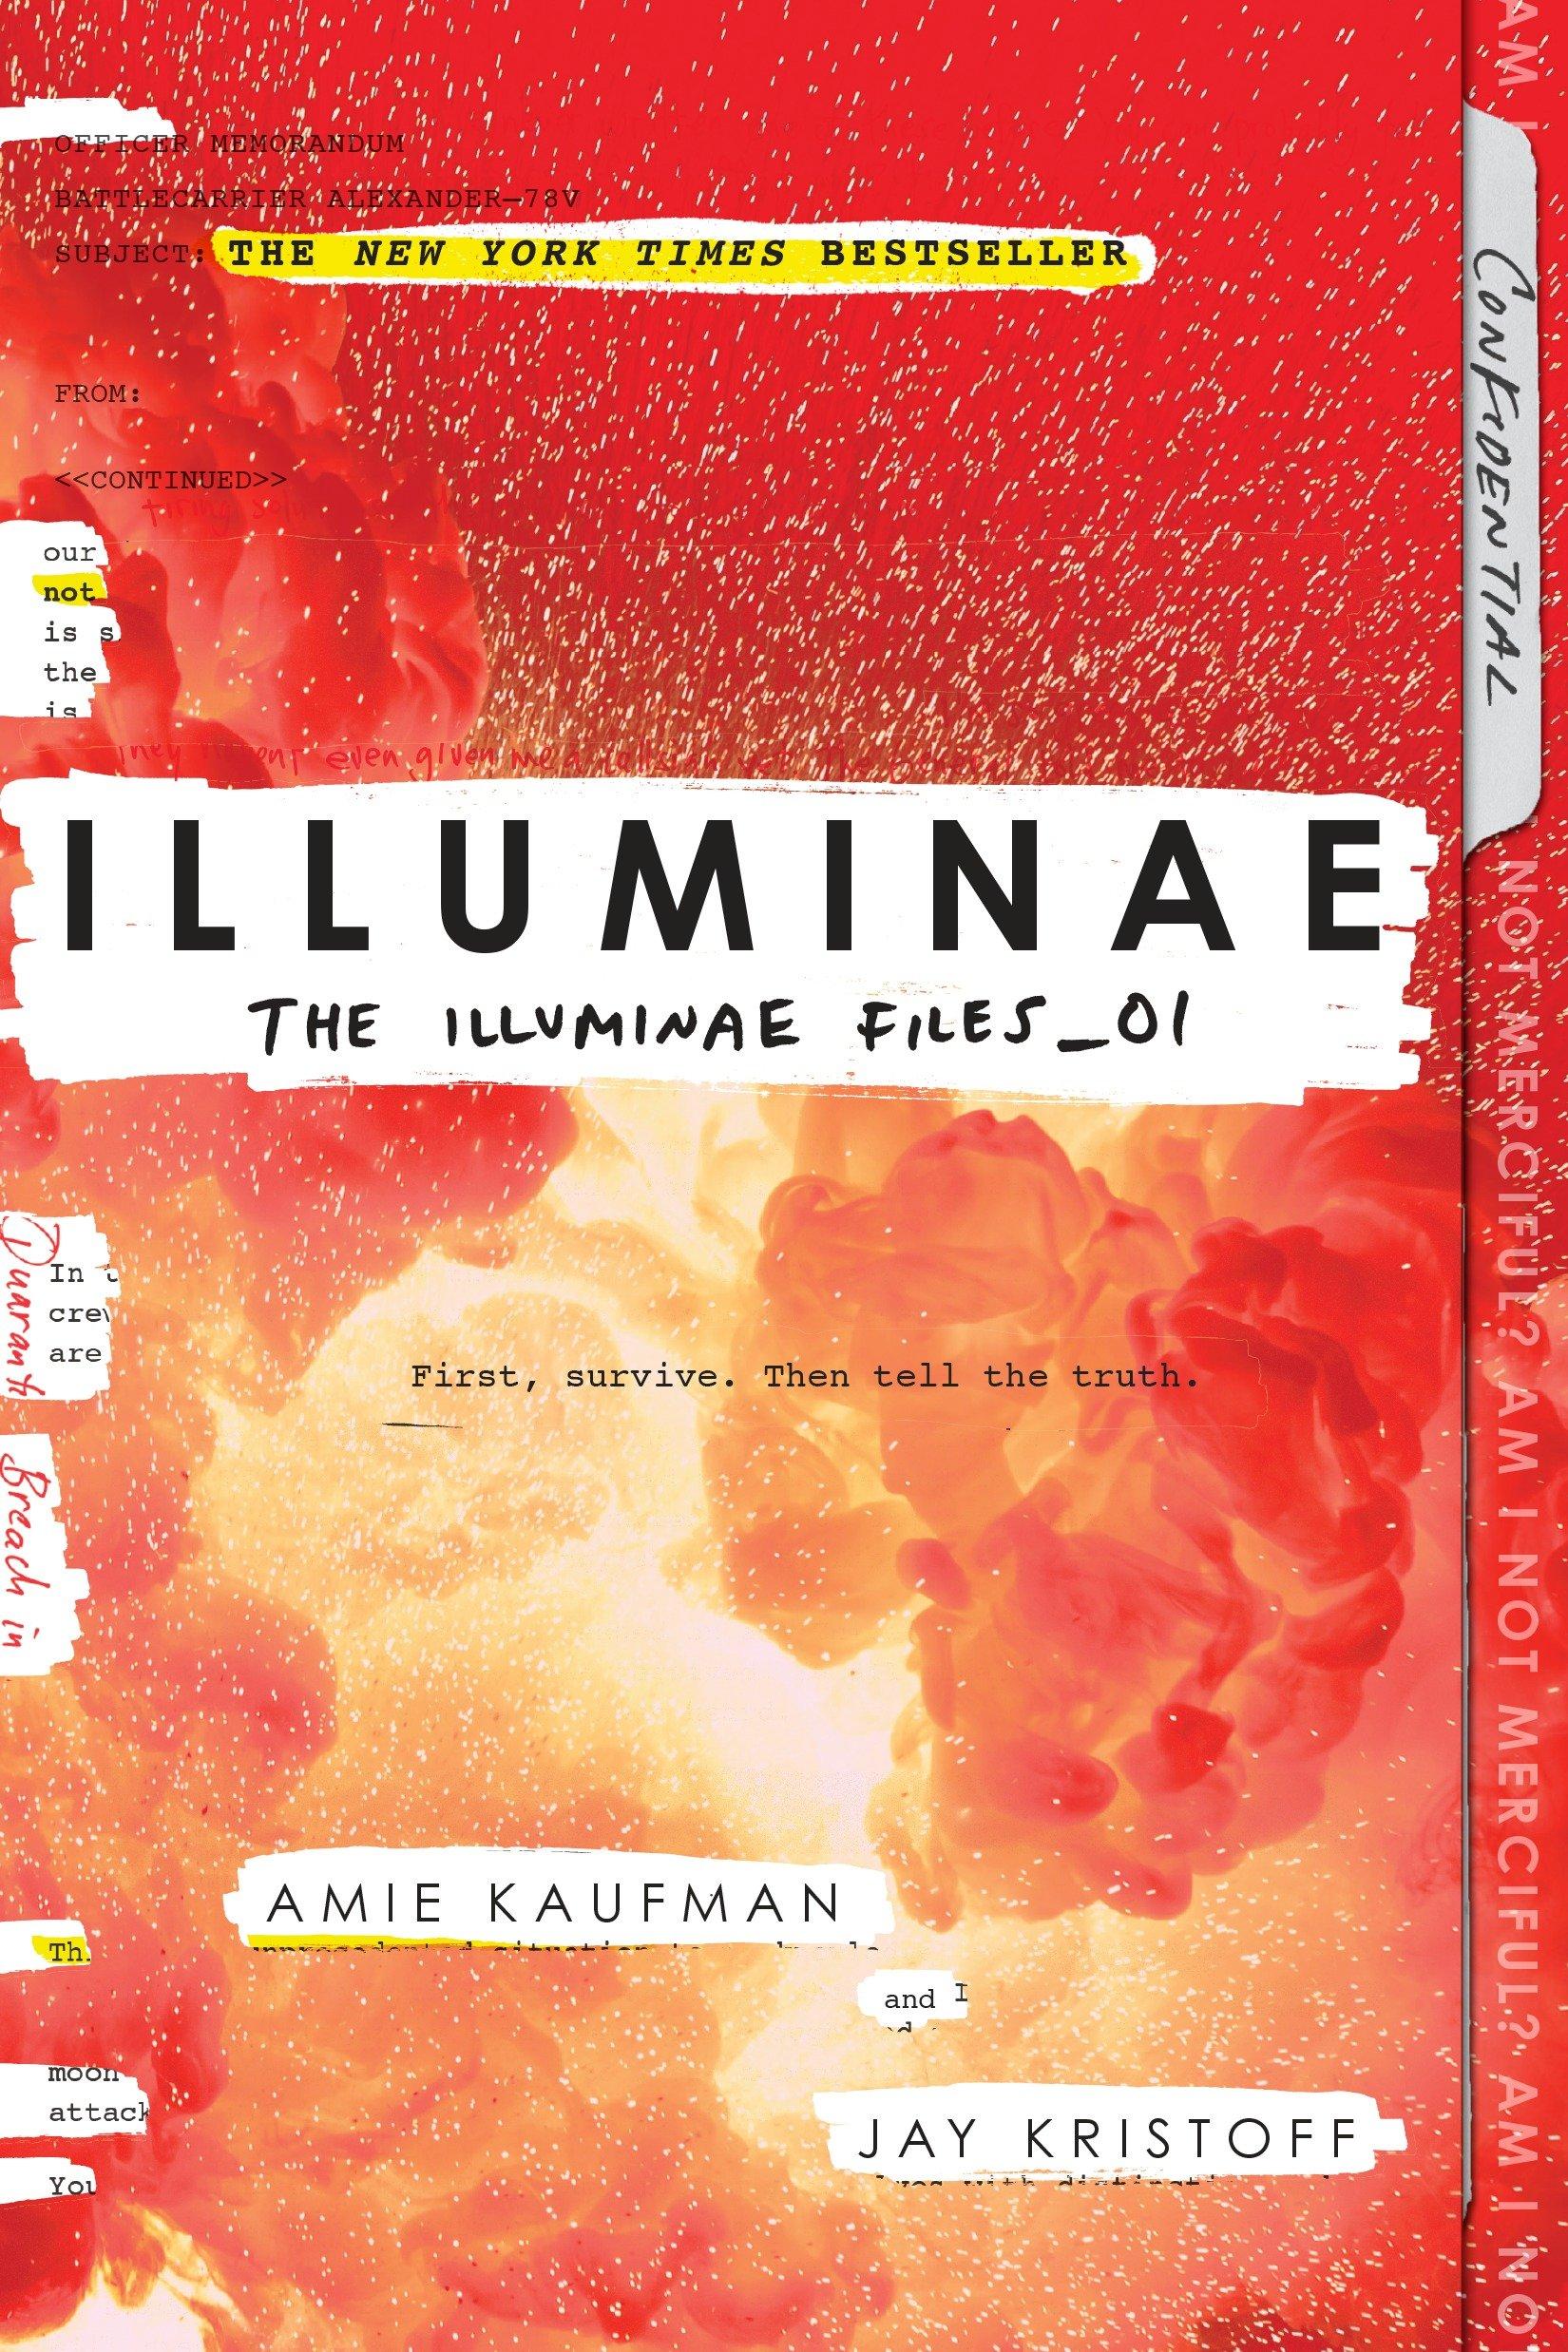 Jay Kristoff, Amie Kaufman, Amie Kaufman and Jay Kristoff: Illuminae (The Illuminae Files, #1) (Paperback, 2015, Allen & Unwin)